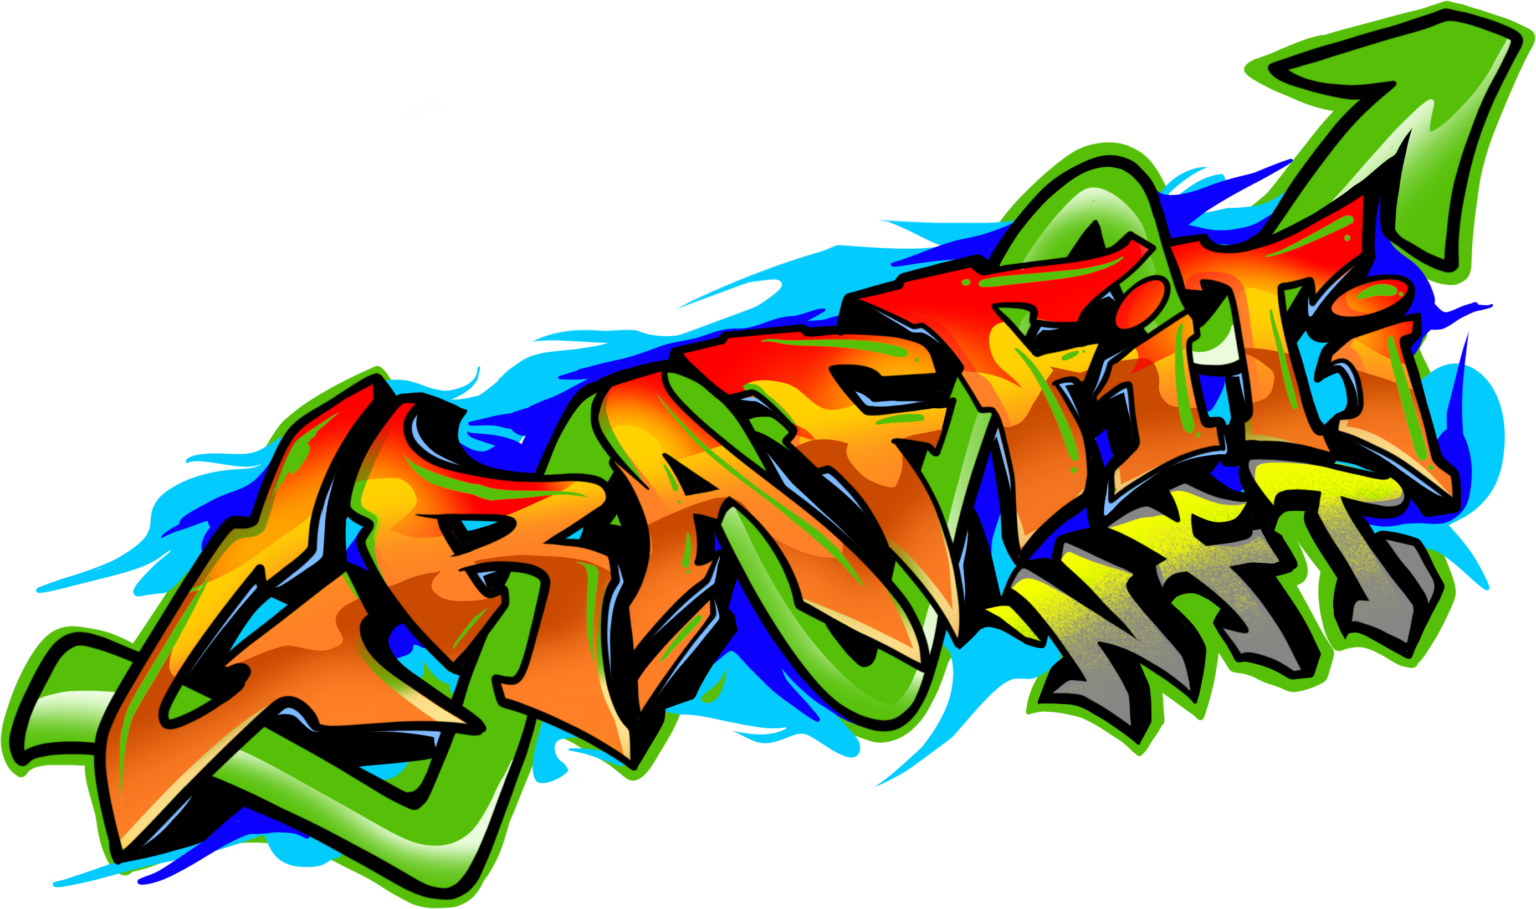 OG1 – Graffiti NFTs